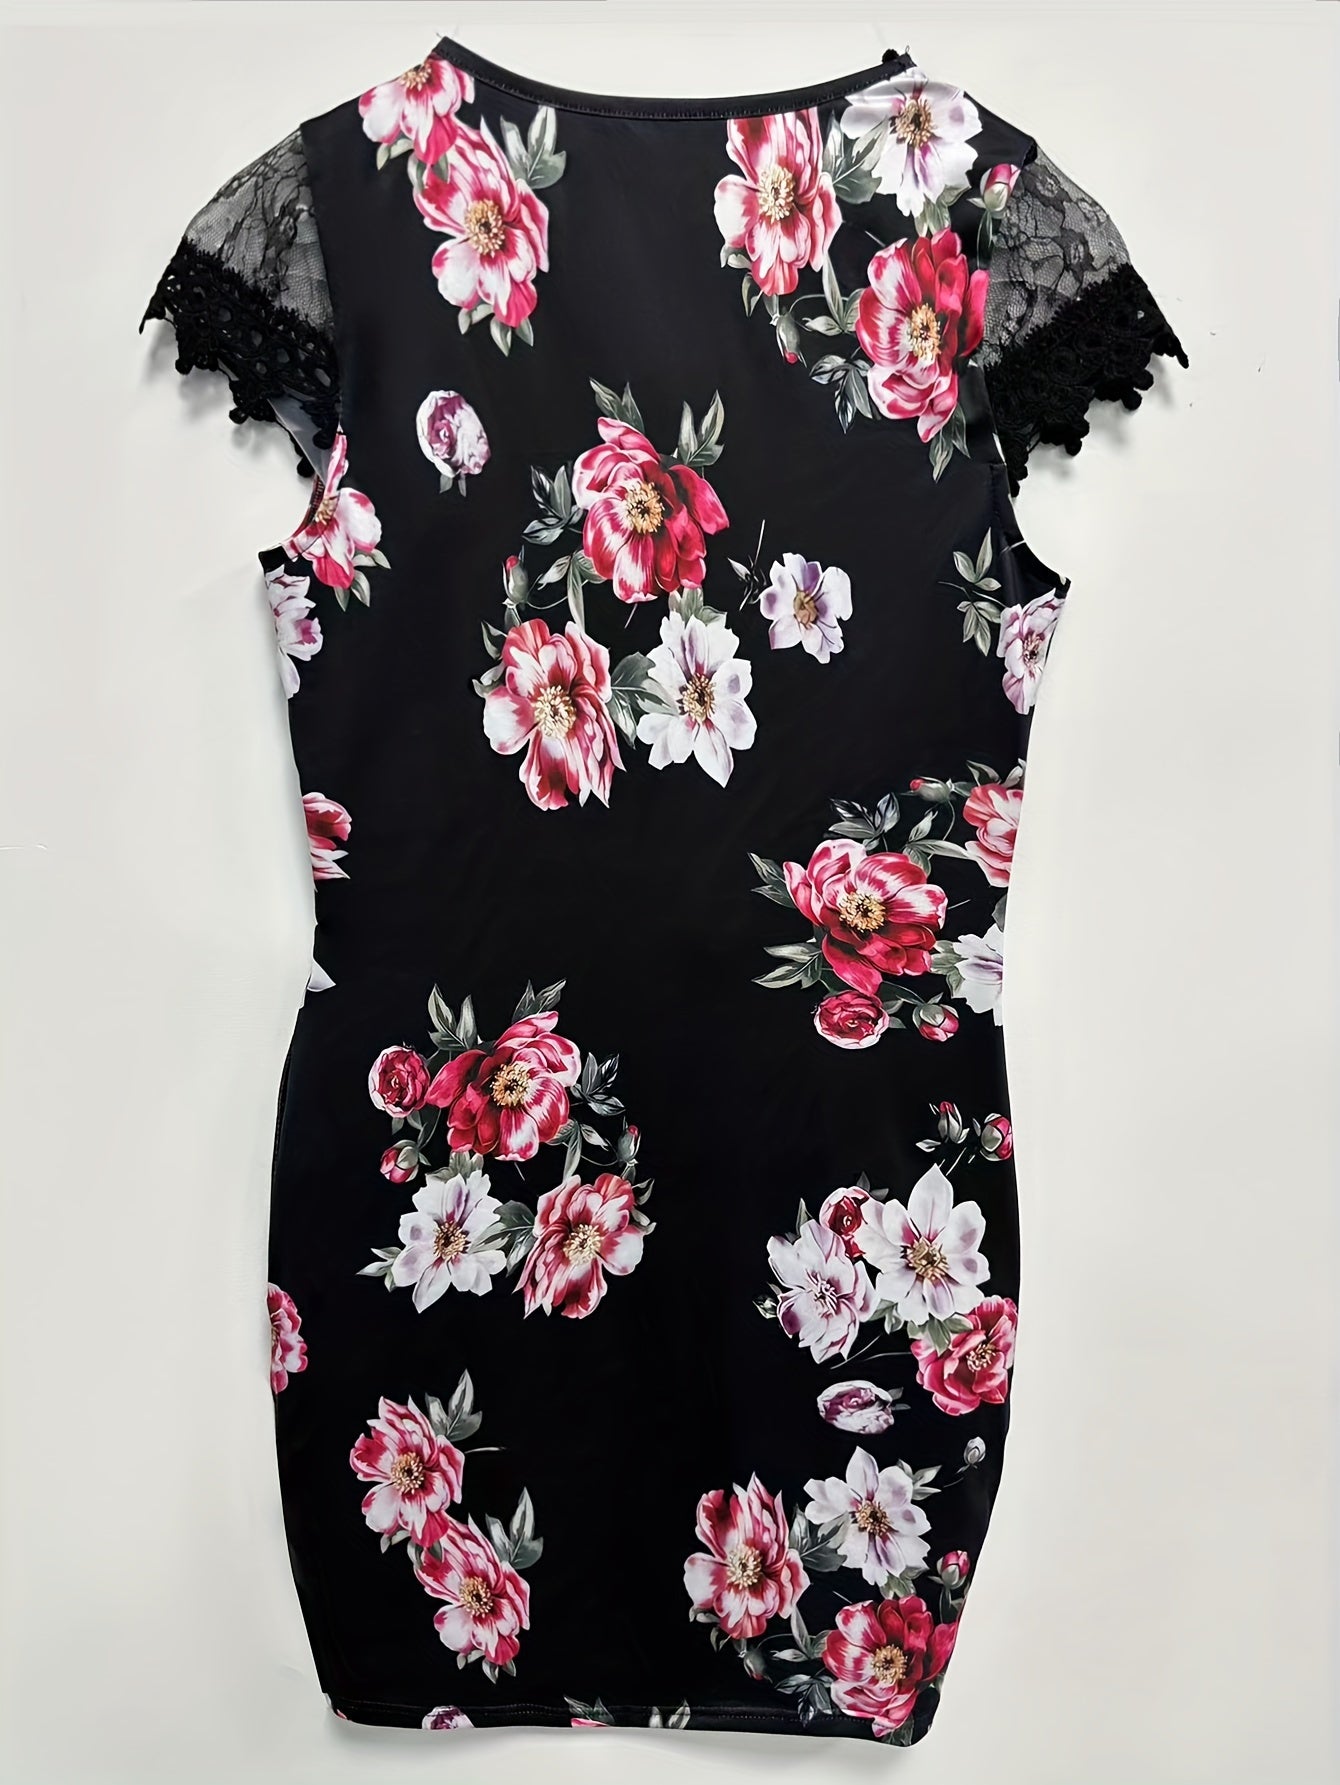 Floral Print Contrast Lace Dress, Kurzarm Elegant Bodycon Kleid